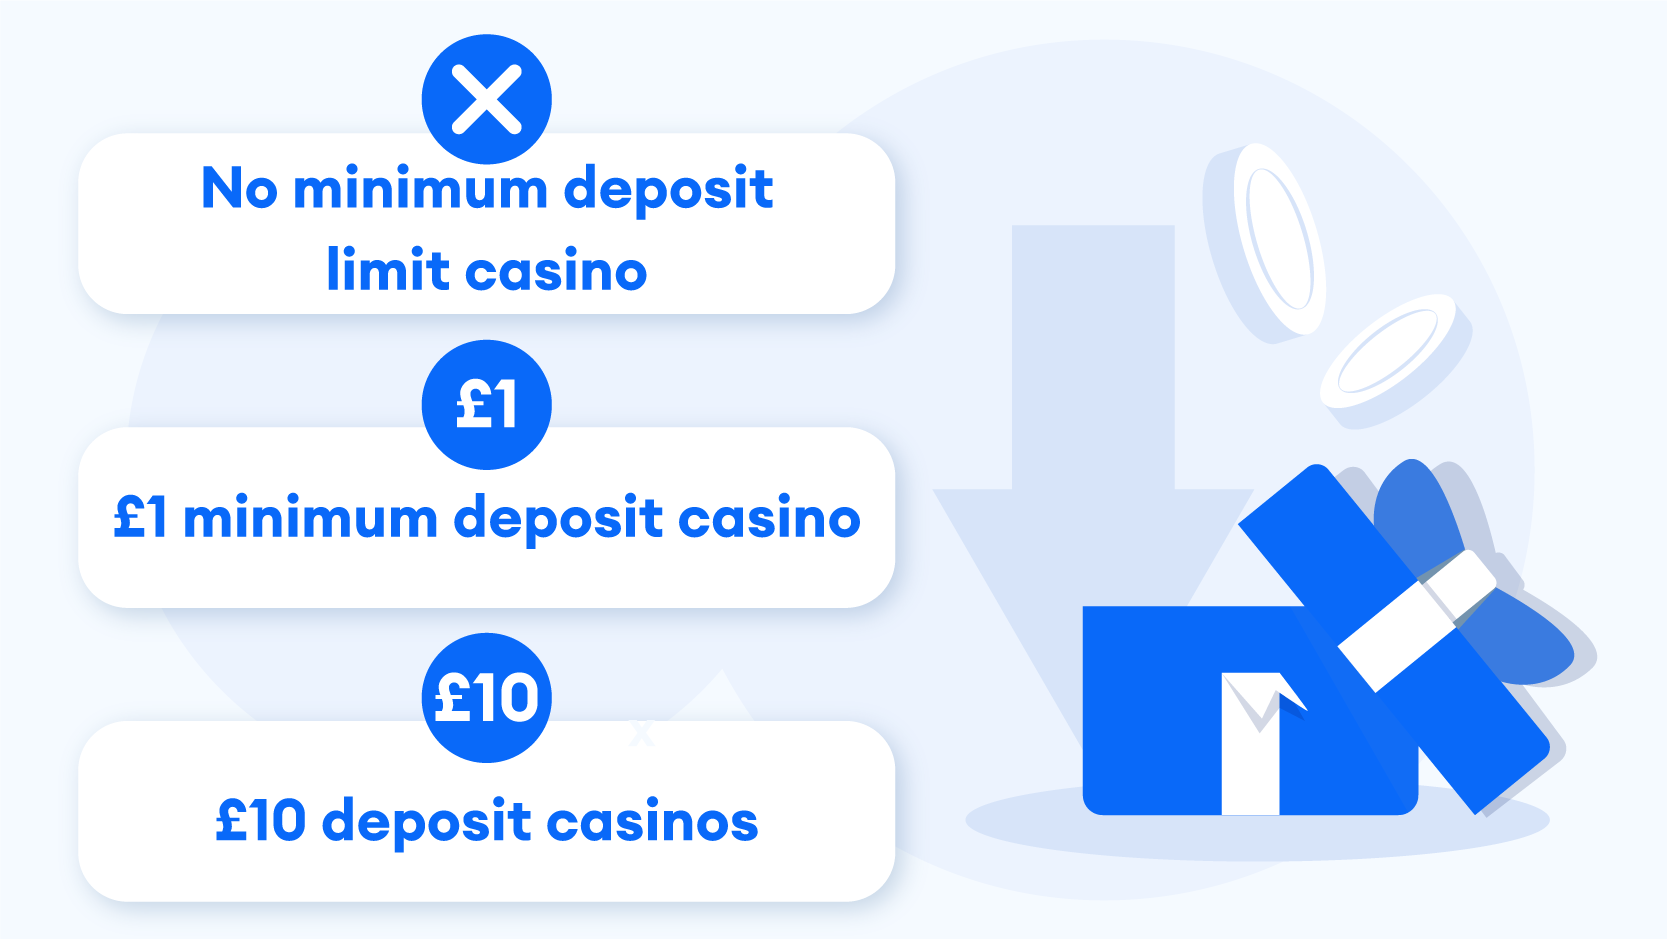 Other Minimum Deposit Casinos